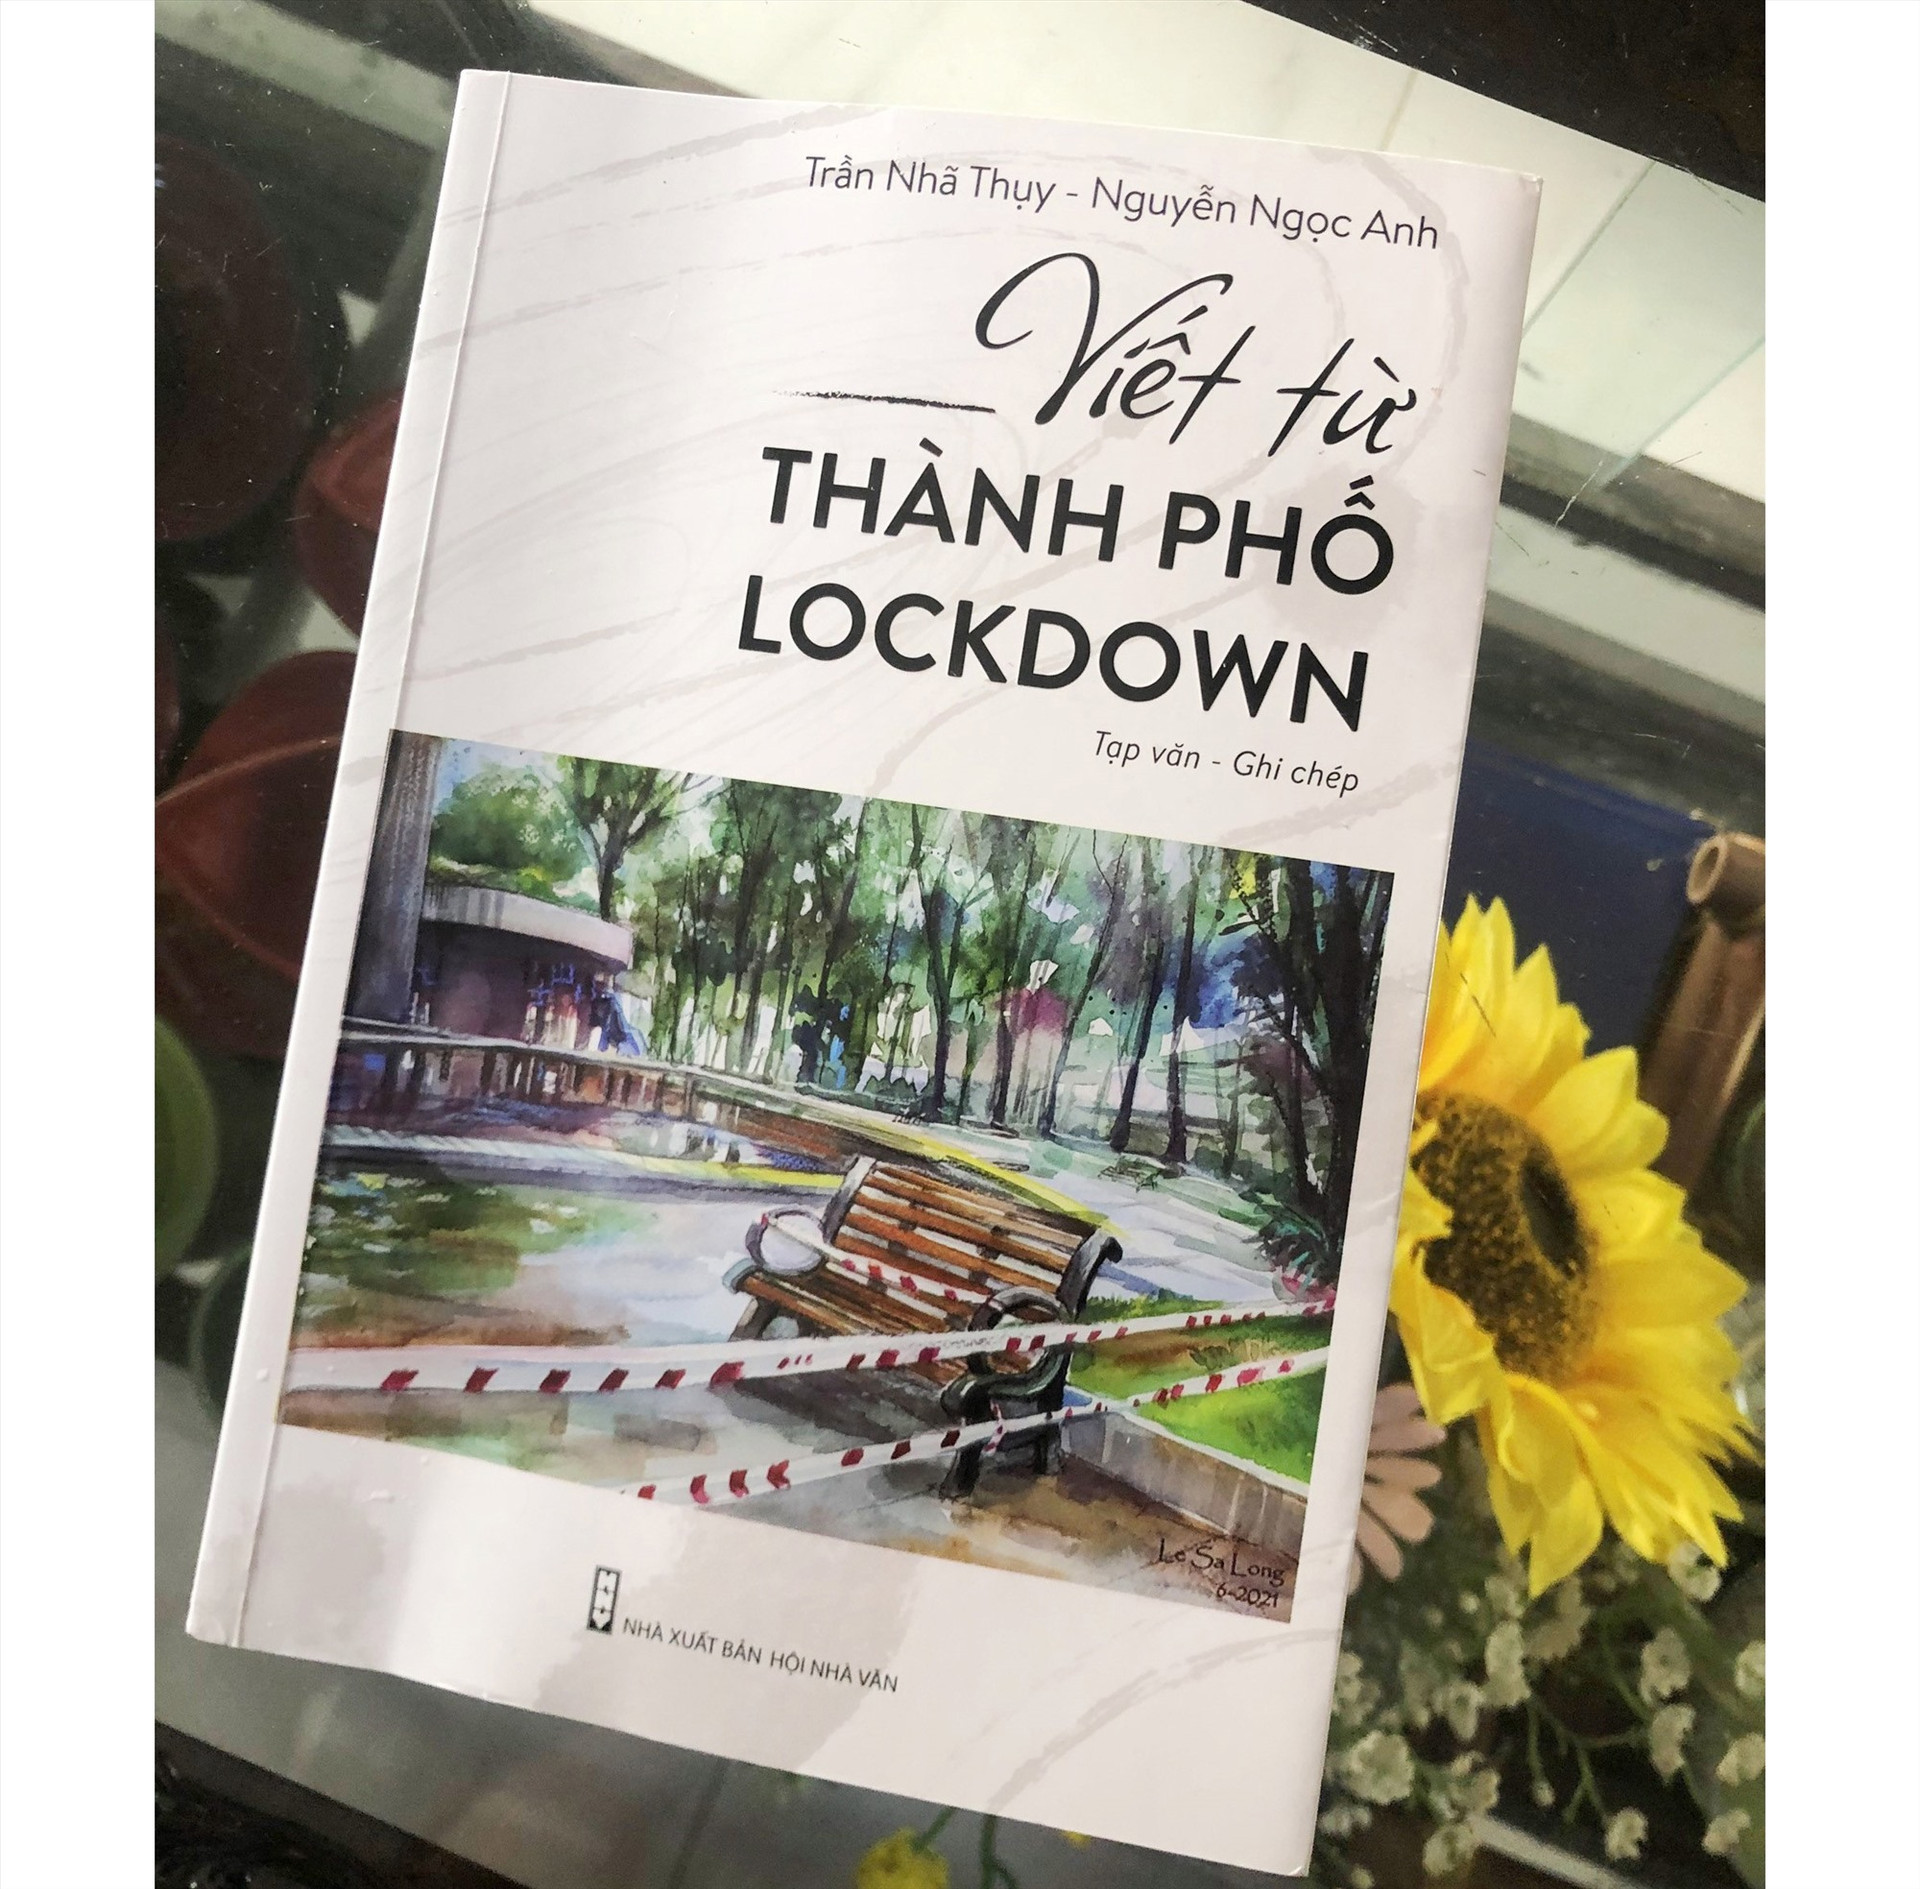 Bìa tập sách “Viết từ thành phố lockdown“.